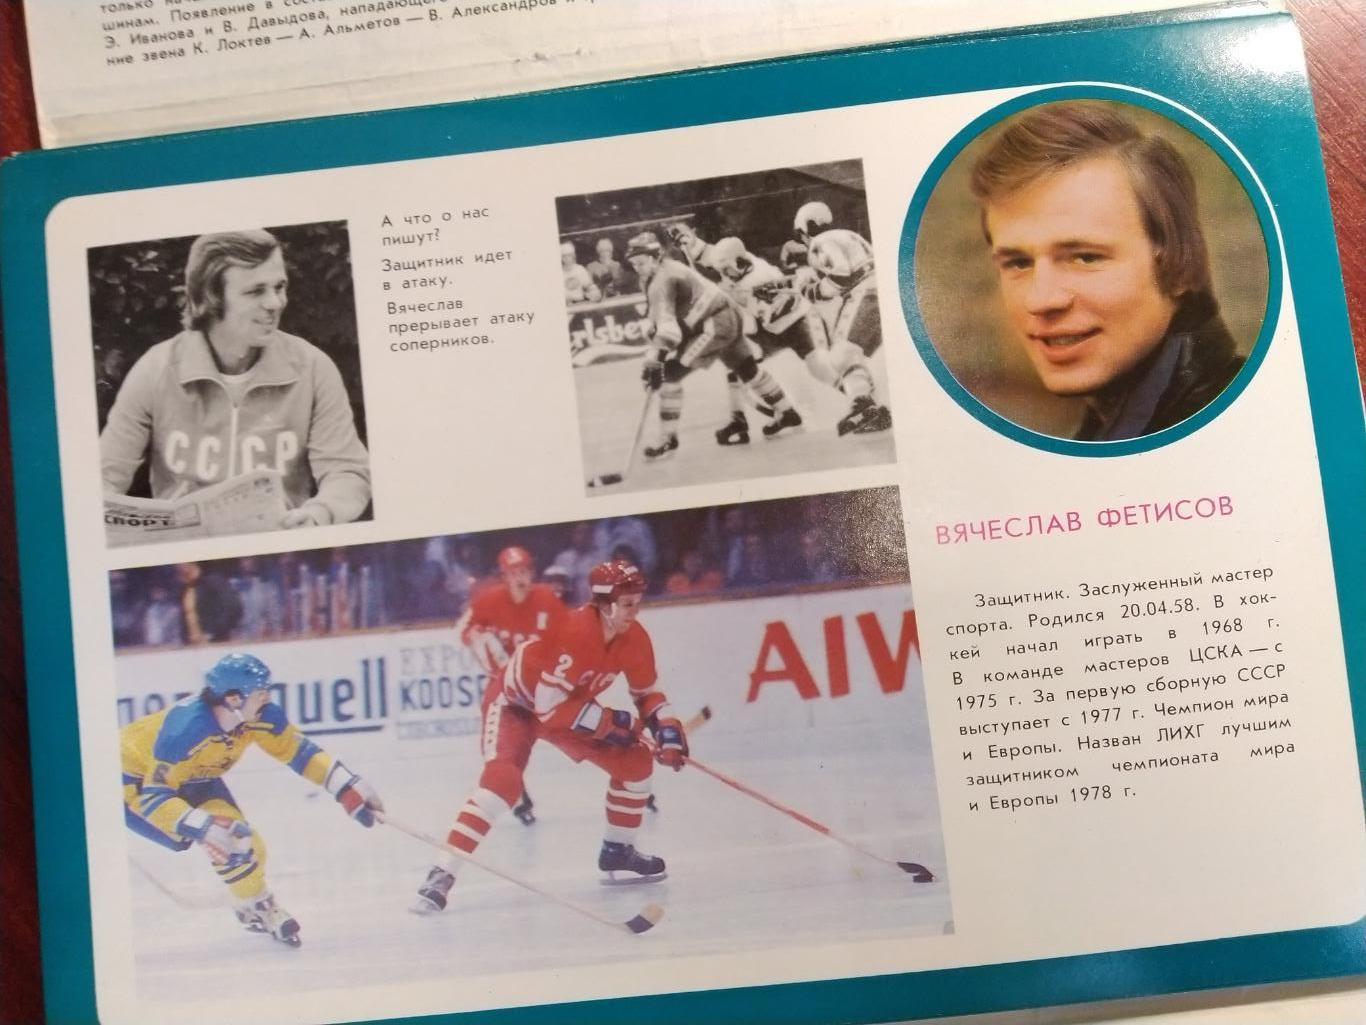 Ледовая дружина -сборная СССР по хоккею 15-кратный чемпион мира 1979 3